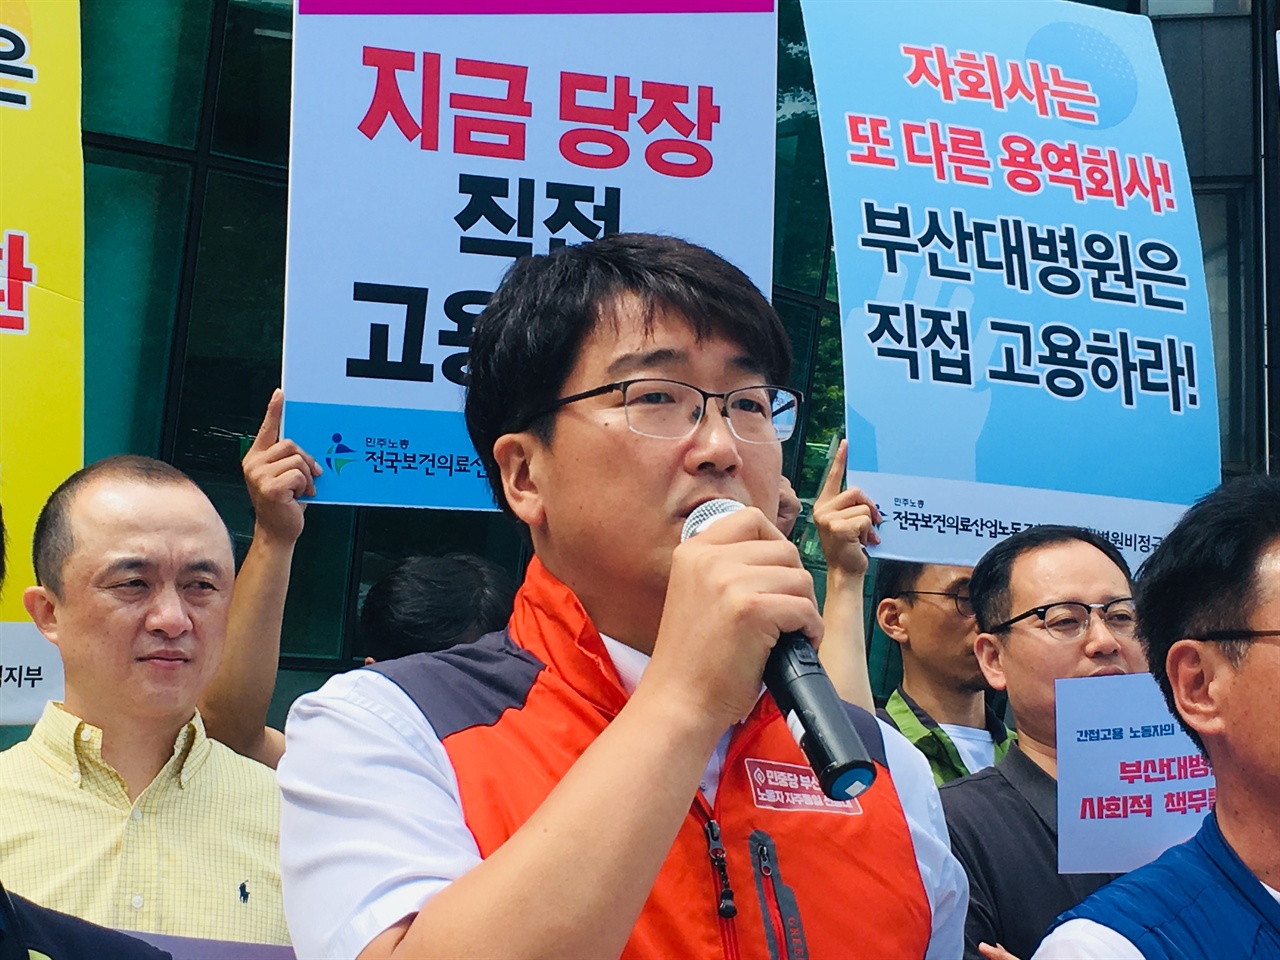 민중당 부산시당 노정현 위원장 규탄 발언 모습